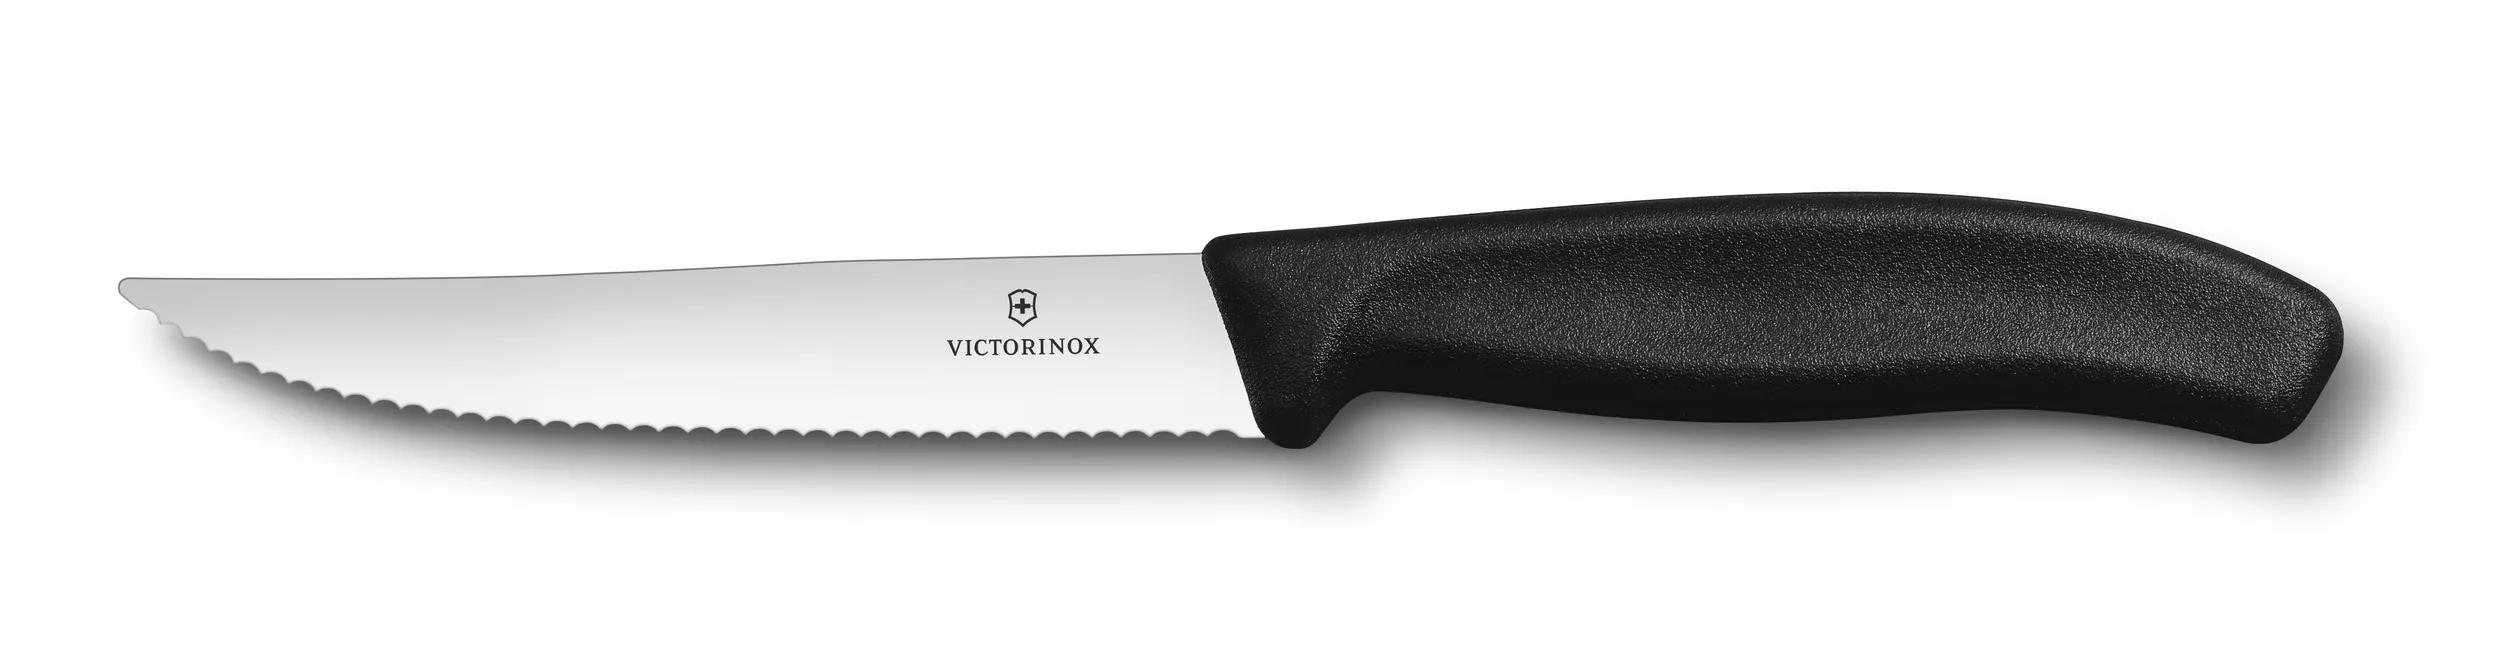 Cuchillo Chuletero de Acero Inoxidable QUTTIN Classic 11 cm - Negro